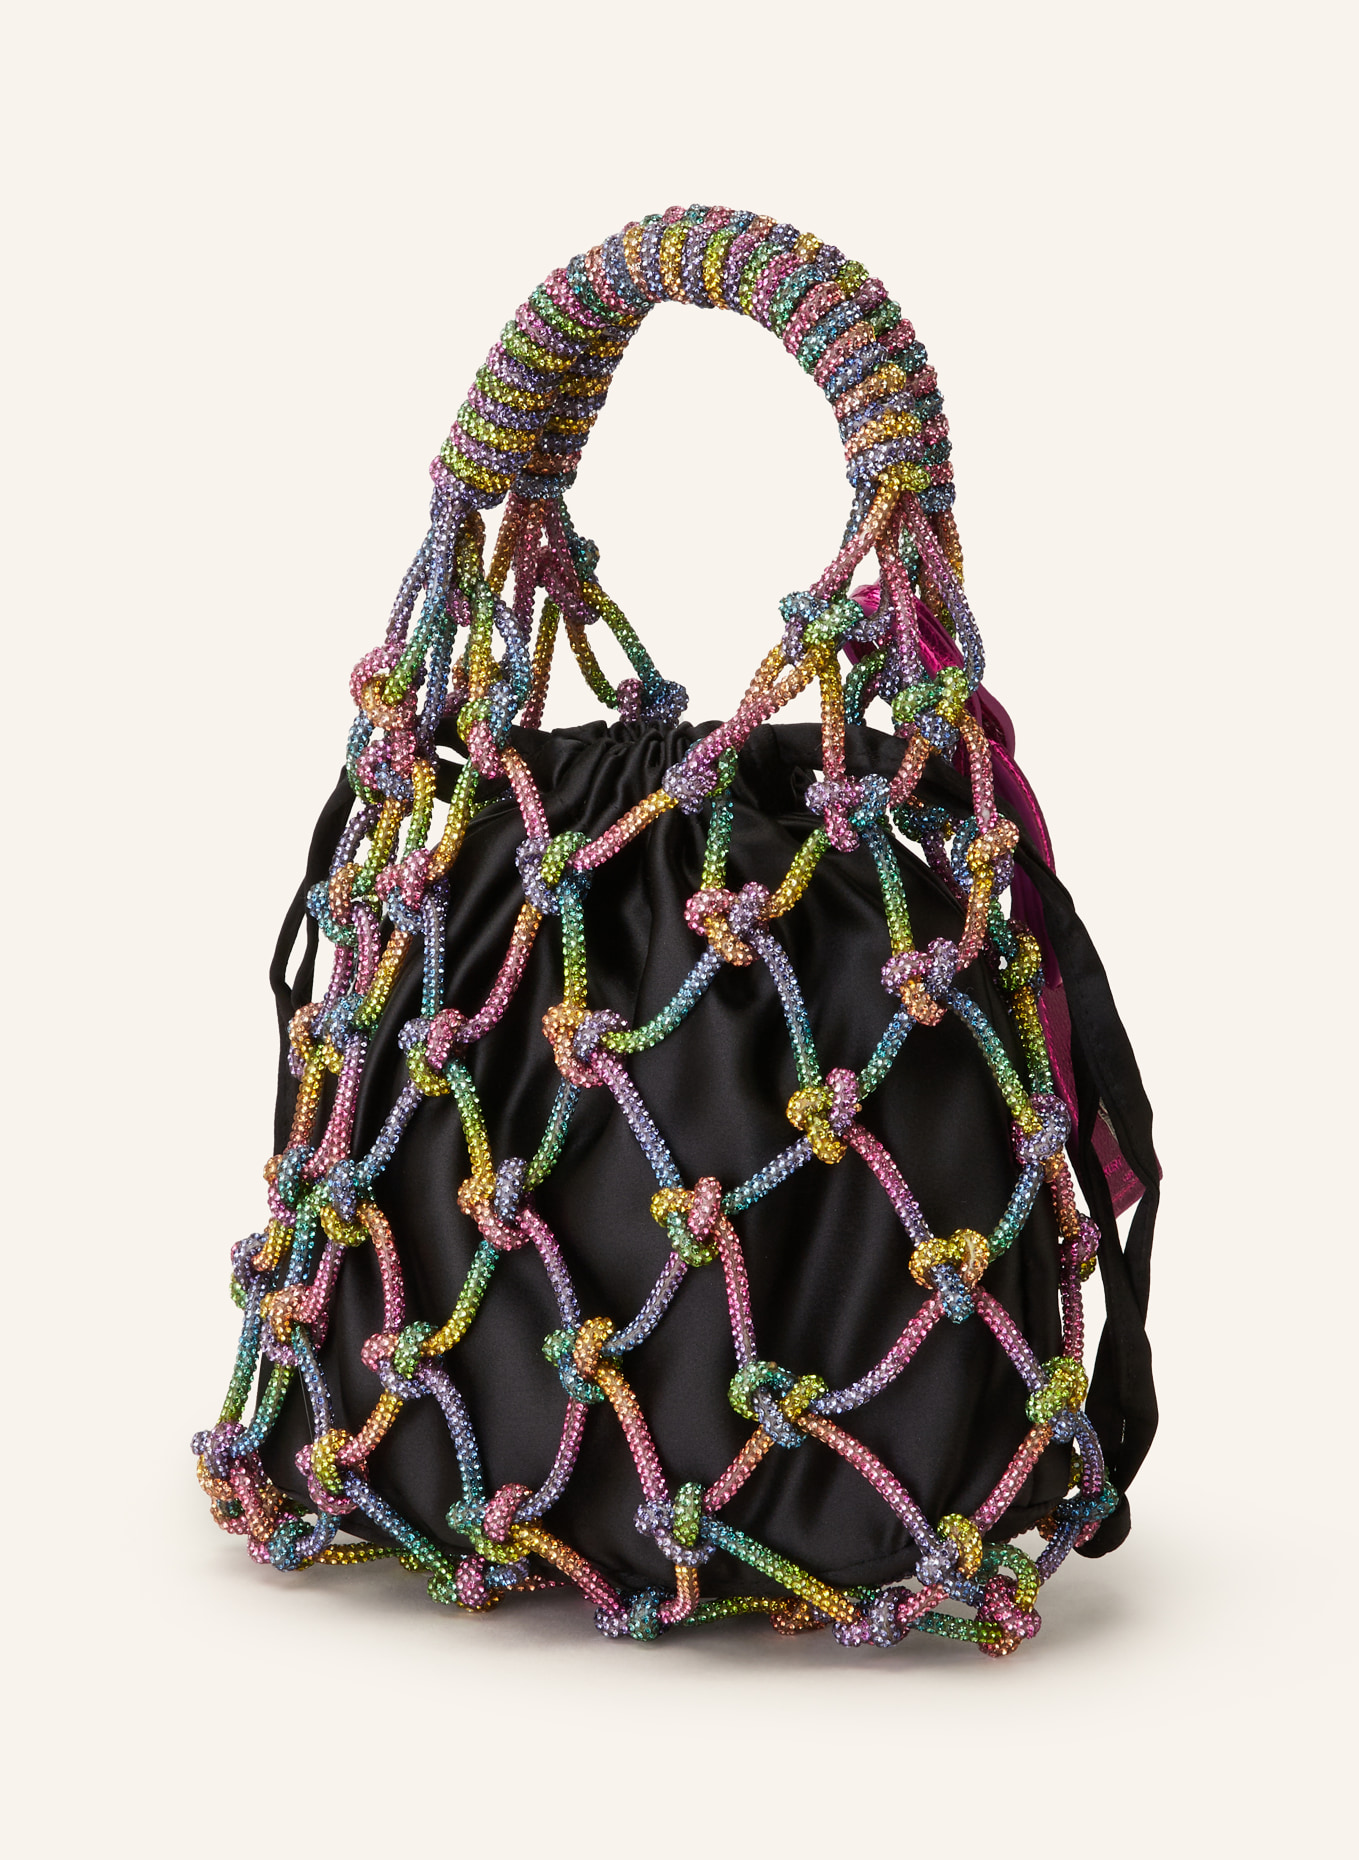 KURT GEIGER Handtasche mit Schmucksteinen, Farbe: PINK/ GELB/ SCHWARZ (Bild 2)